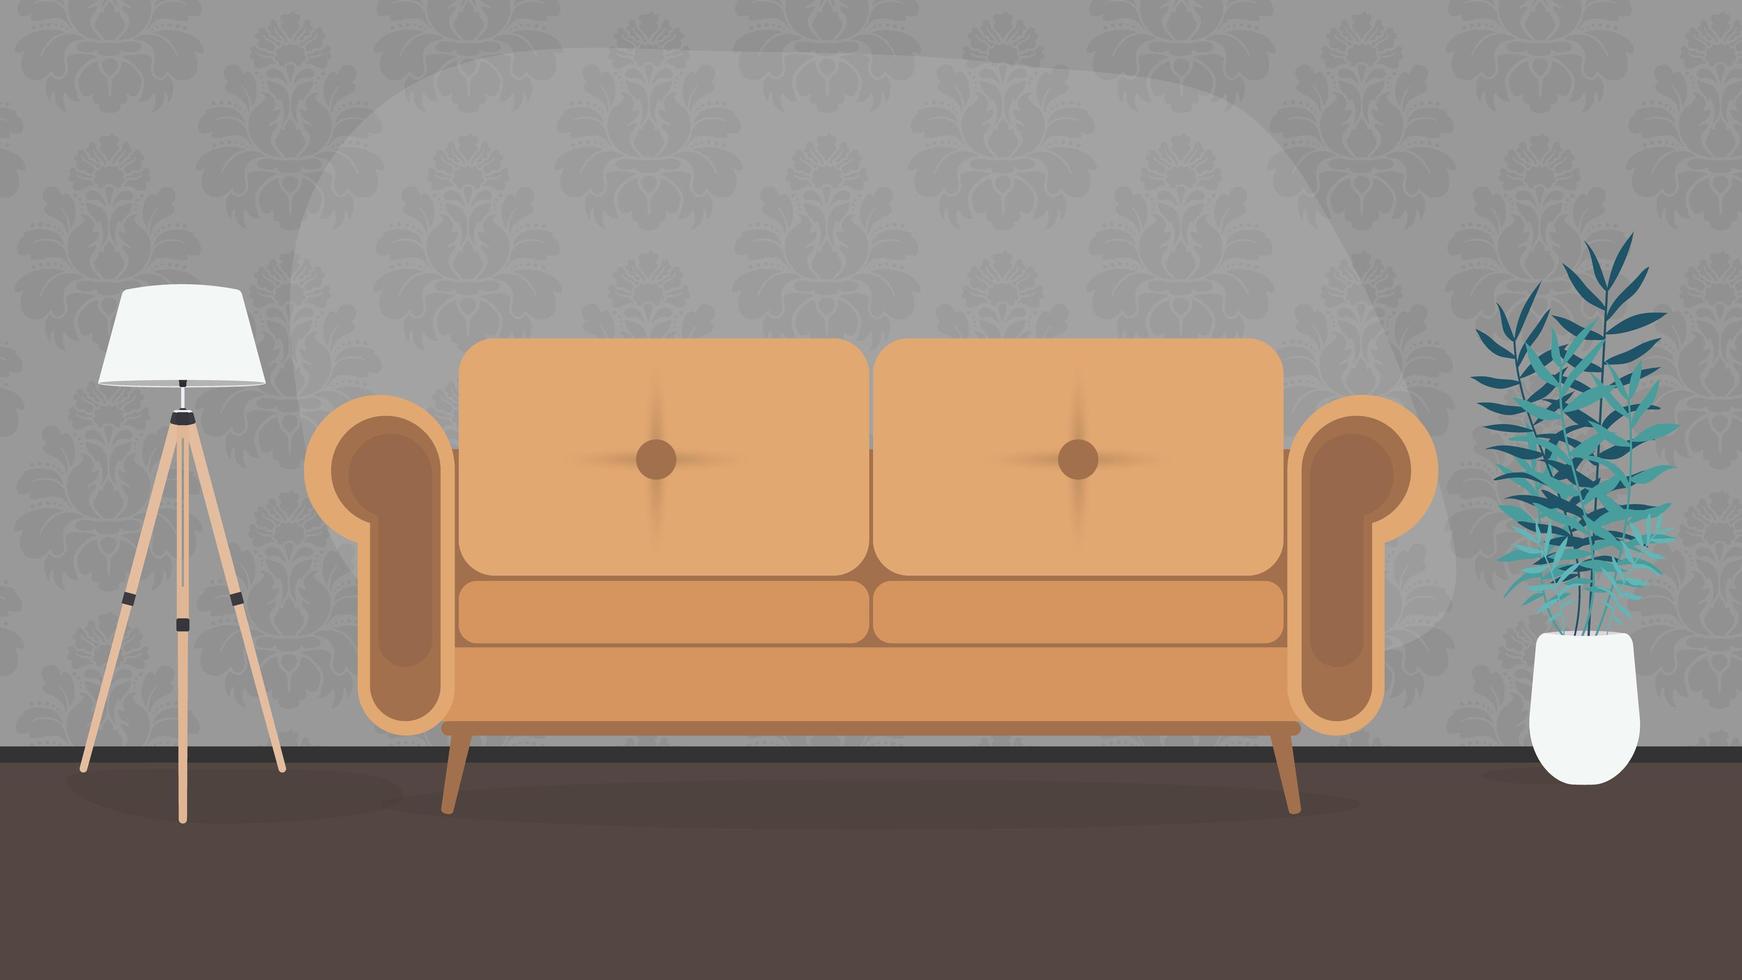 la habitación está hecha en colores oscuros. un sofá elegante y perezoso, una lámpara de pie, una planta de interior en una maceta blanca. papel tapiz gris con un patrón. vector. vector